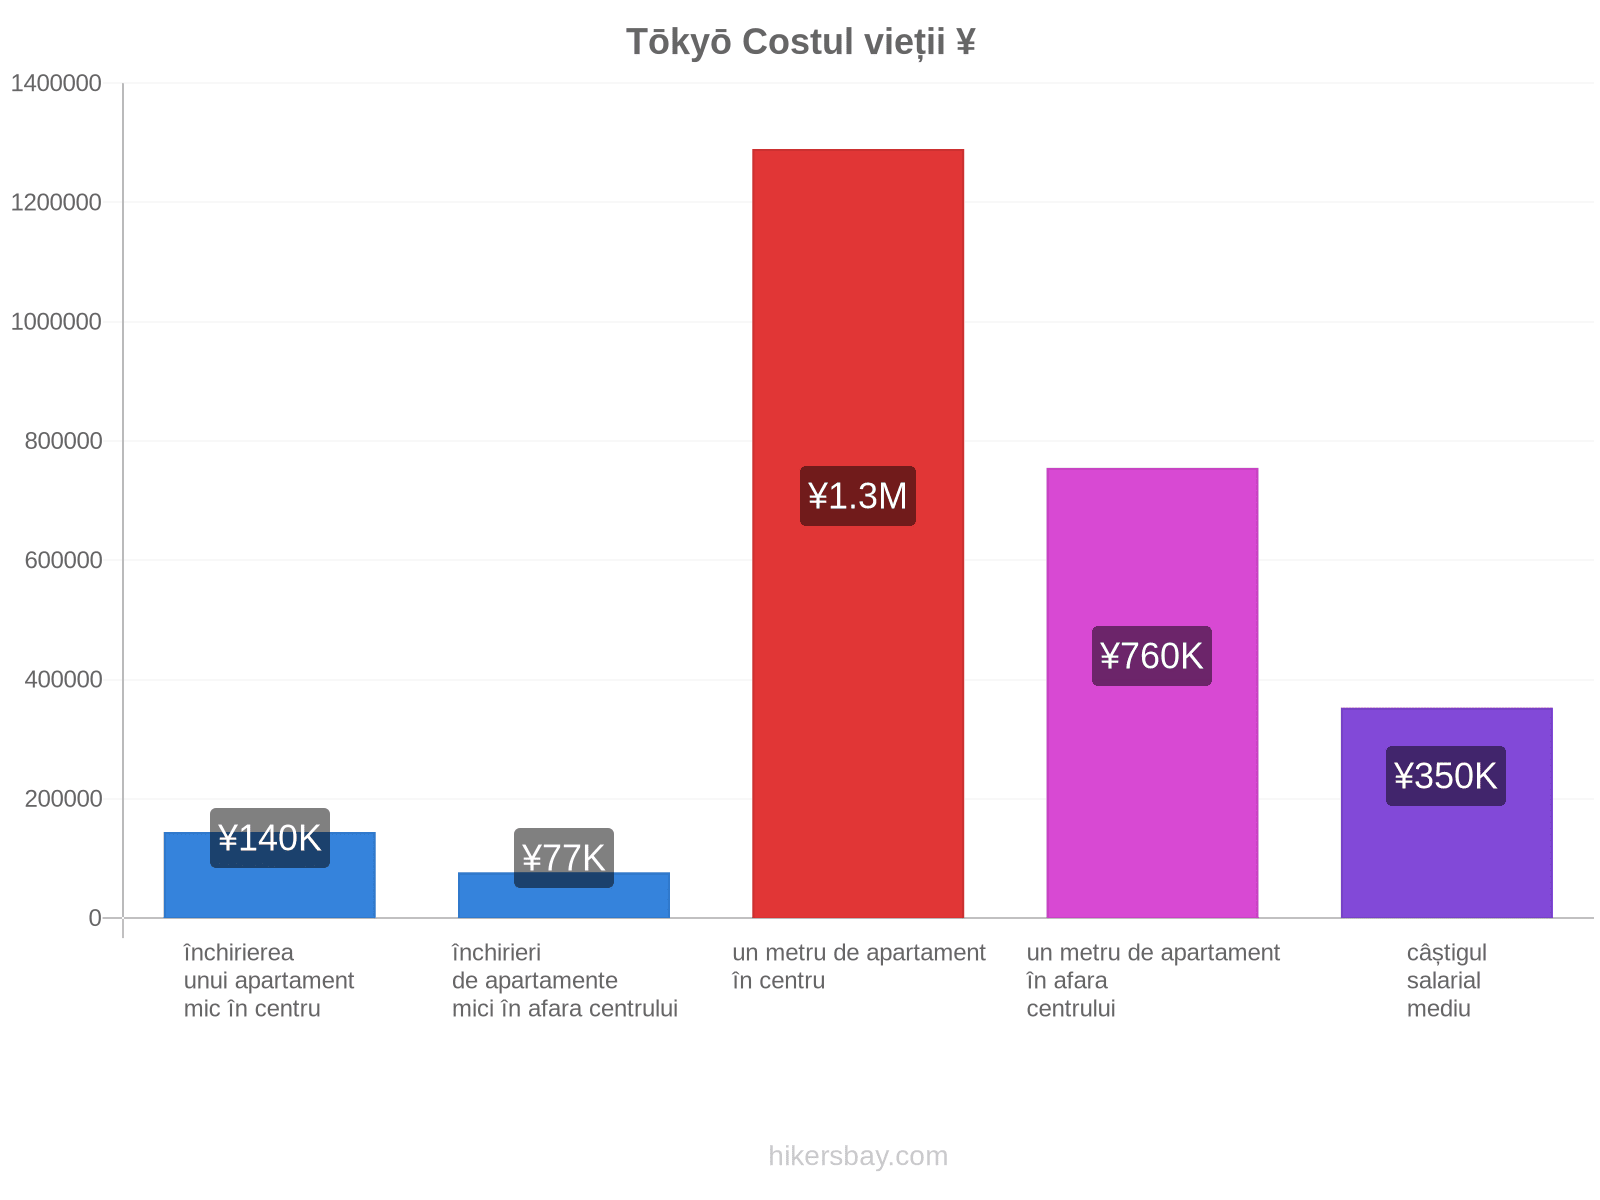 Tōkyō costul vieții hikersbay.com